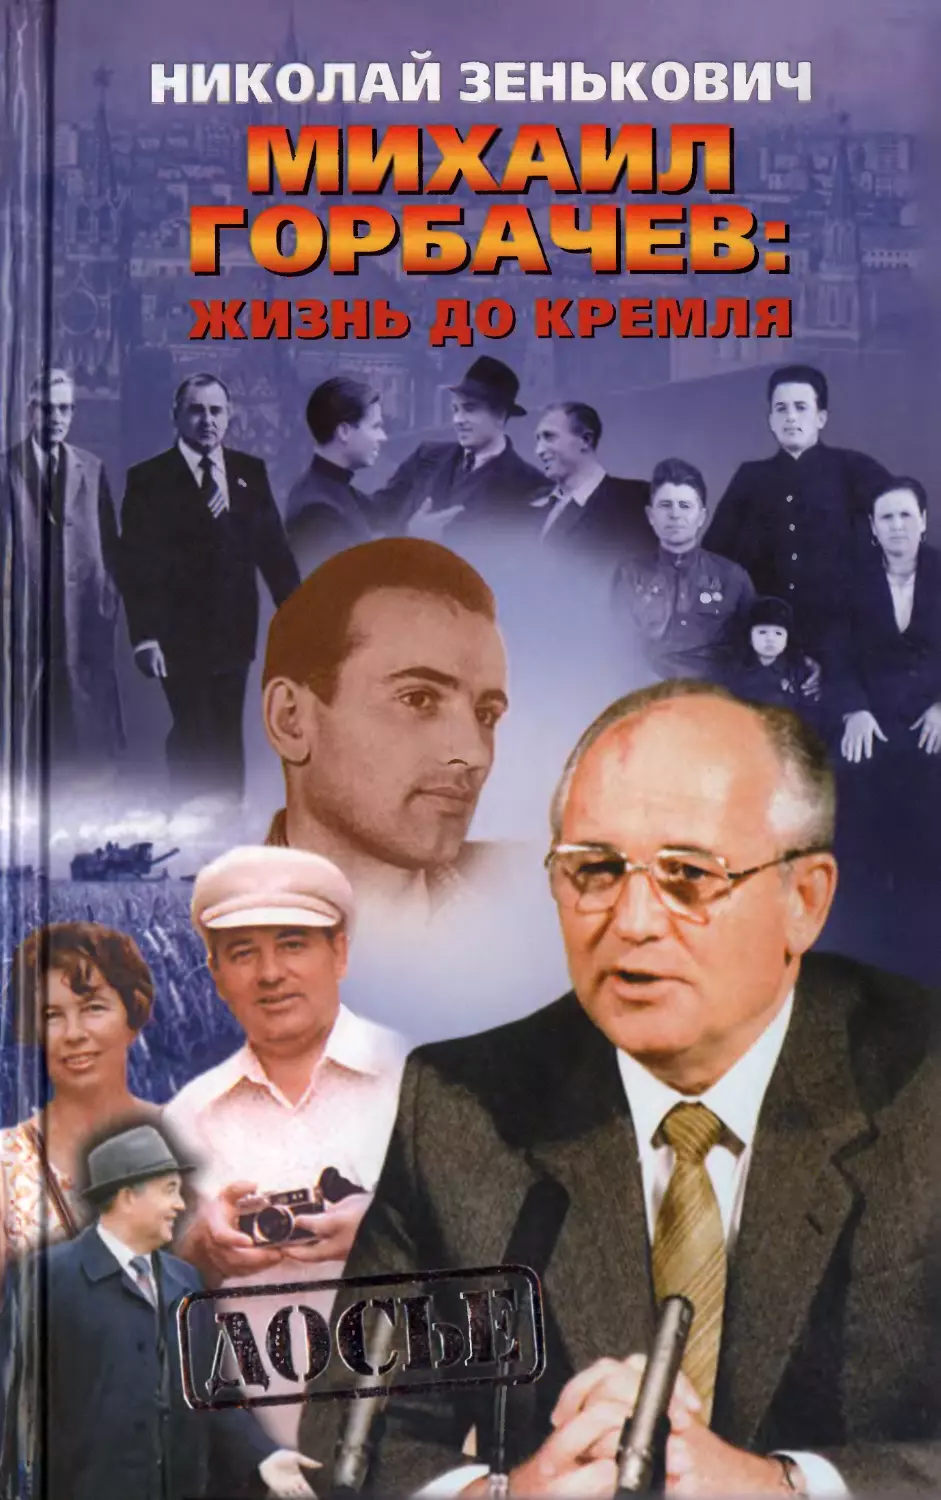 Николай Зенькович - Михаил Горбачев: жизнь до Кремля